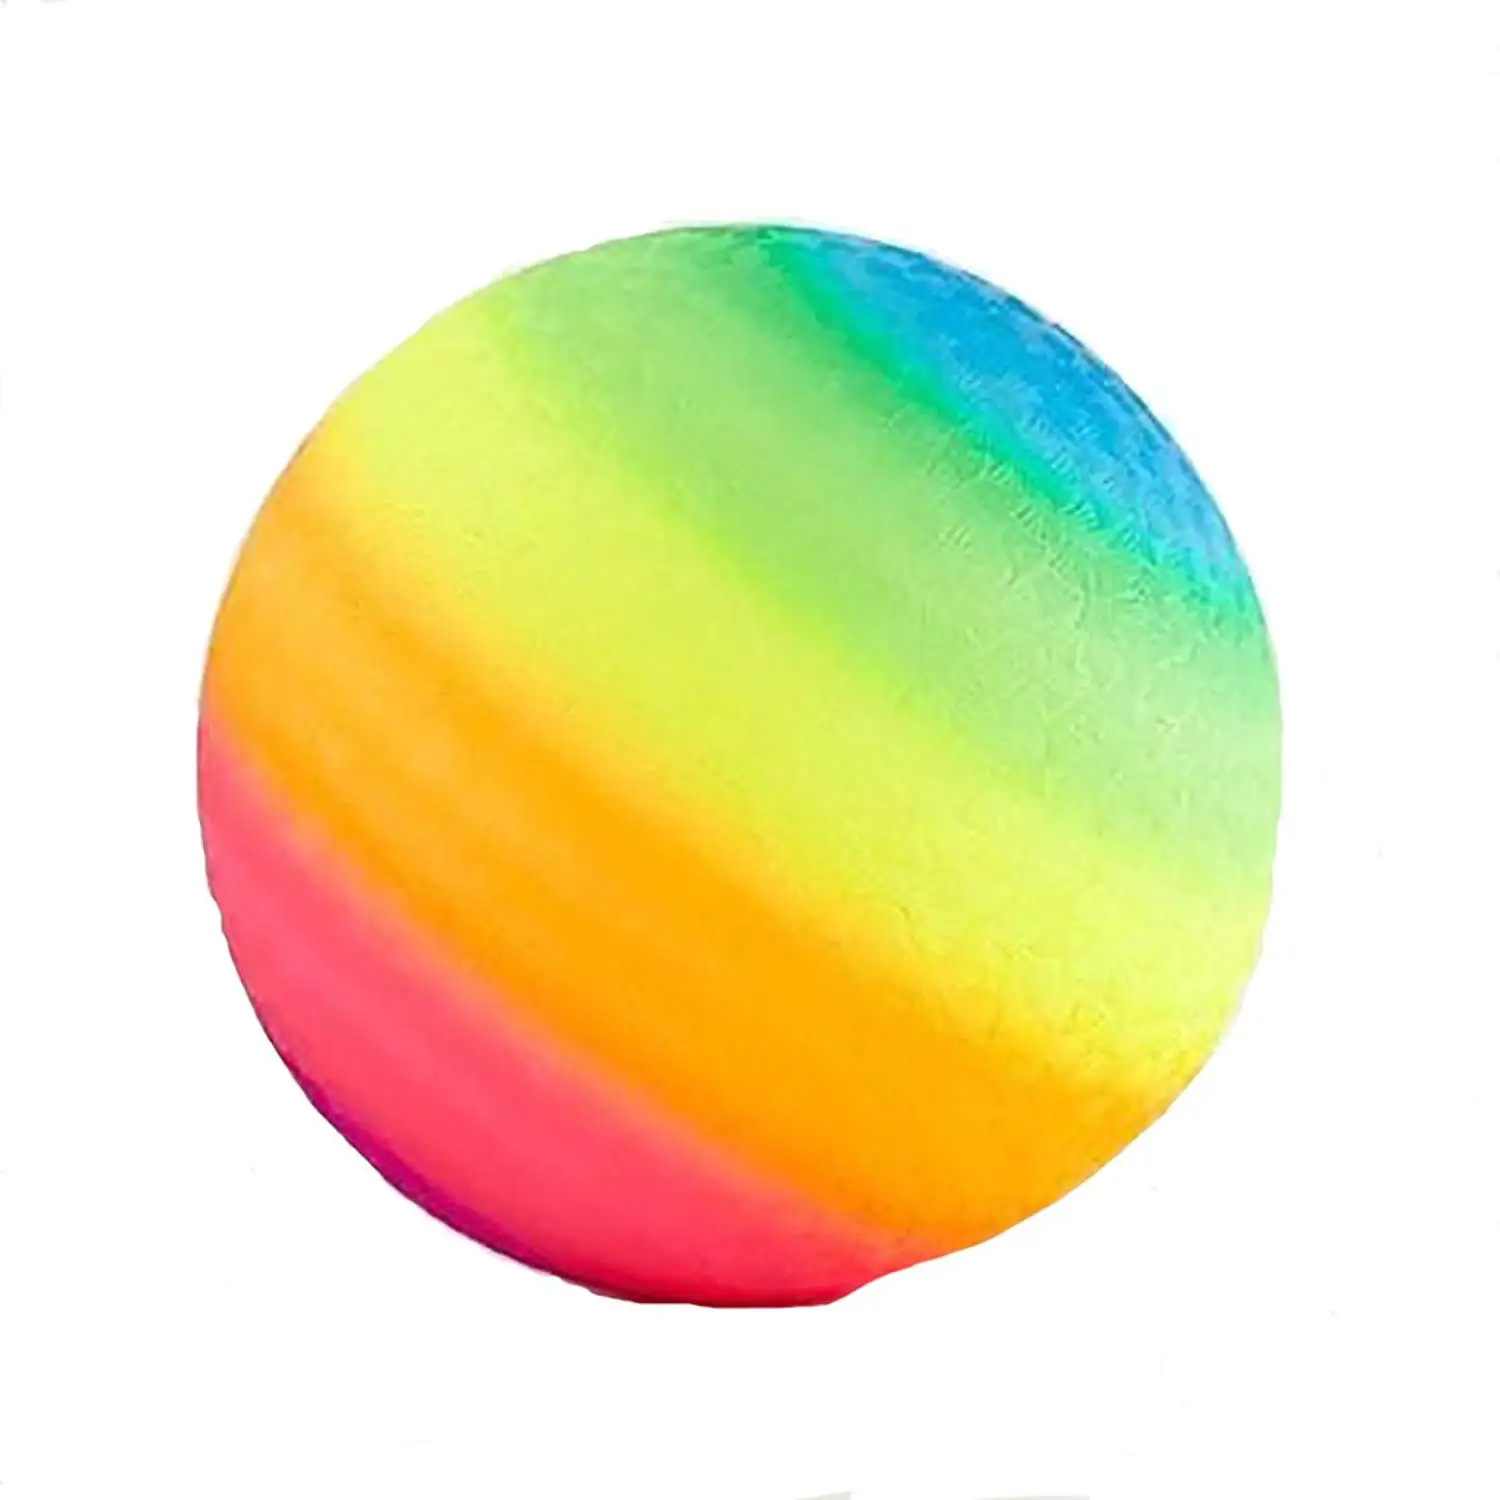 Цветной шар. Радужный шарик. Разноцветный шар. Мяч Радуга. Радужная сфера.